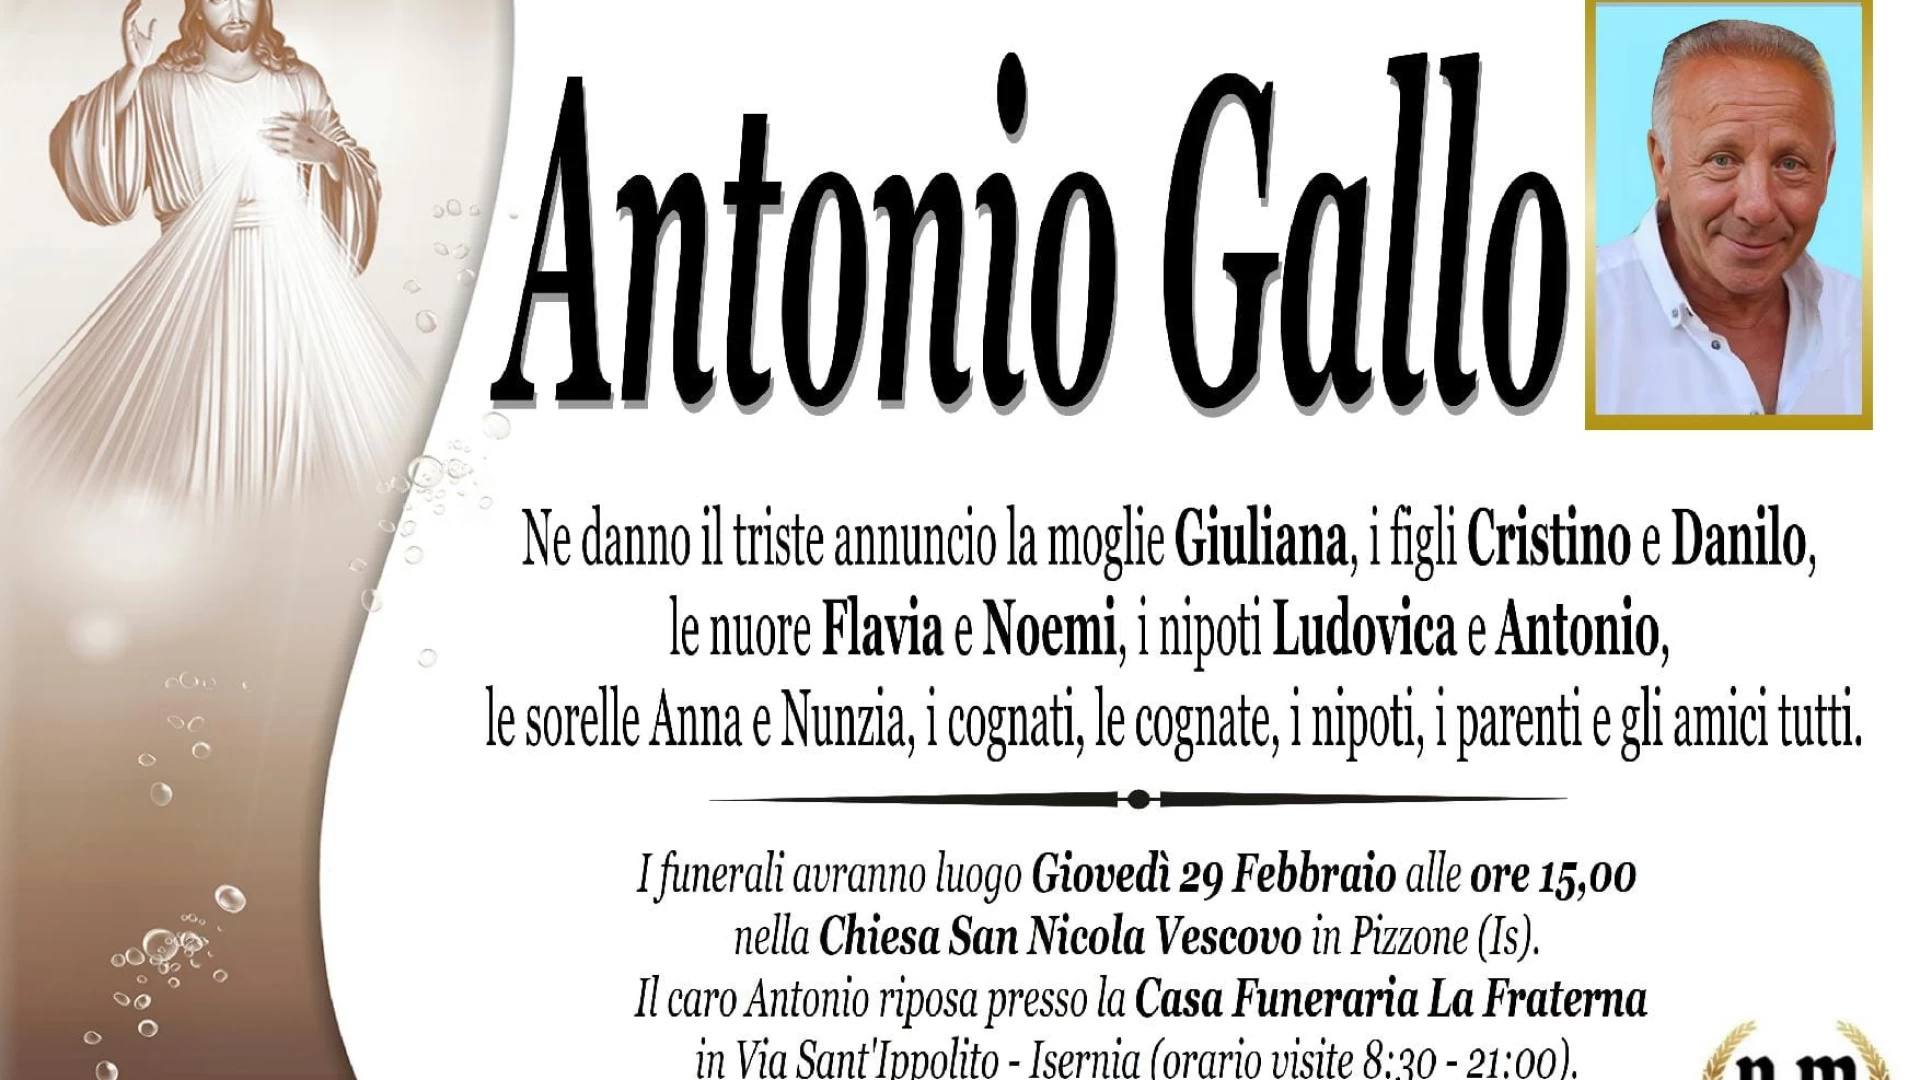 Il cordoglio della nostra redazione per l'improvvisa e tragica scomparsa del caro Antonio Gallo. "Amico di tutti e sempre disponibile".